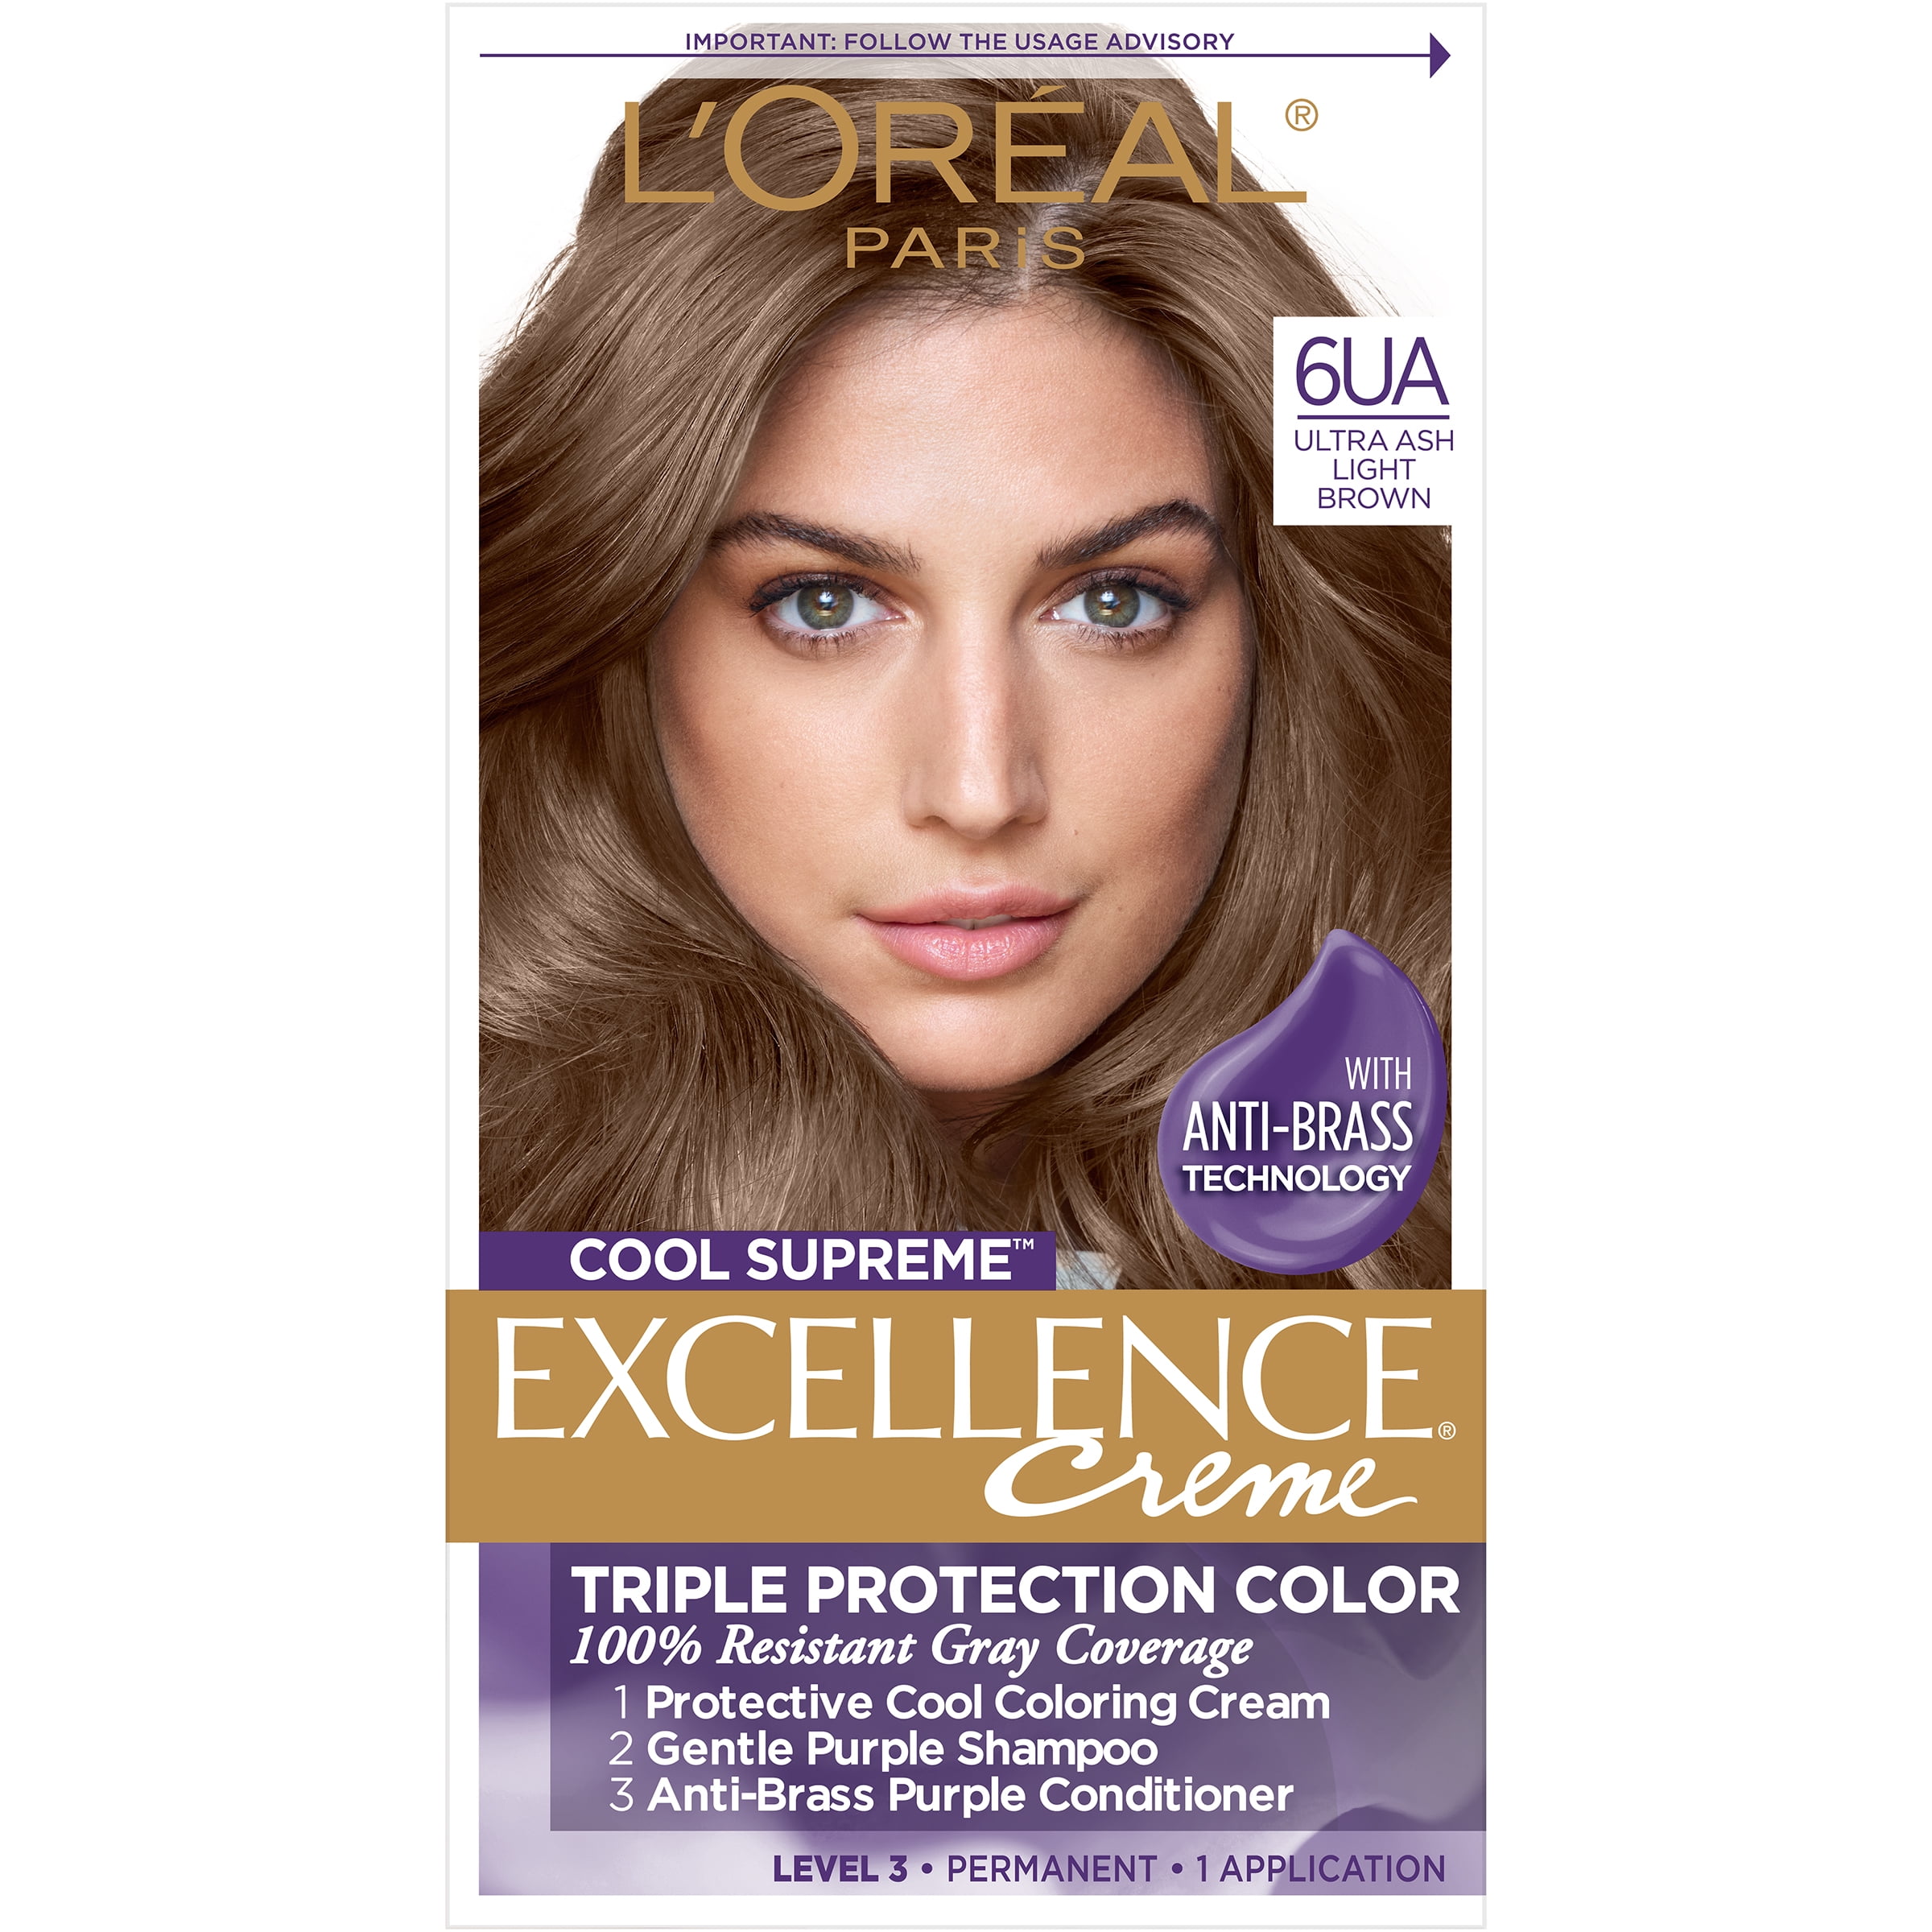 L'Oreal Paris Excellence Creme Hair Color, Ultra Ash Light - Walmart.com